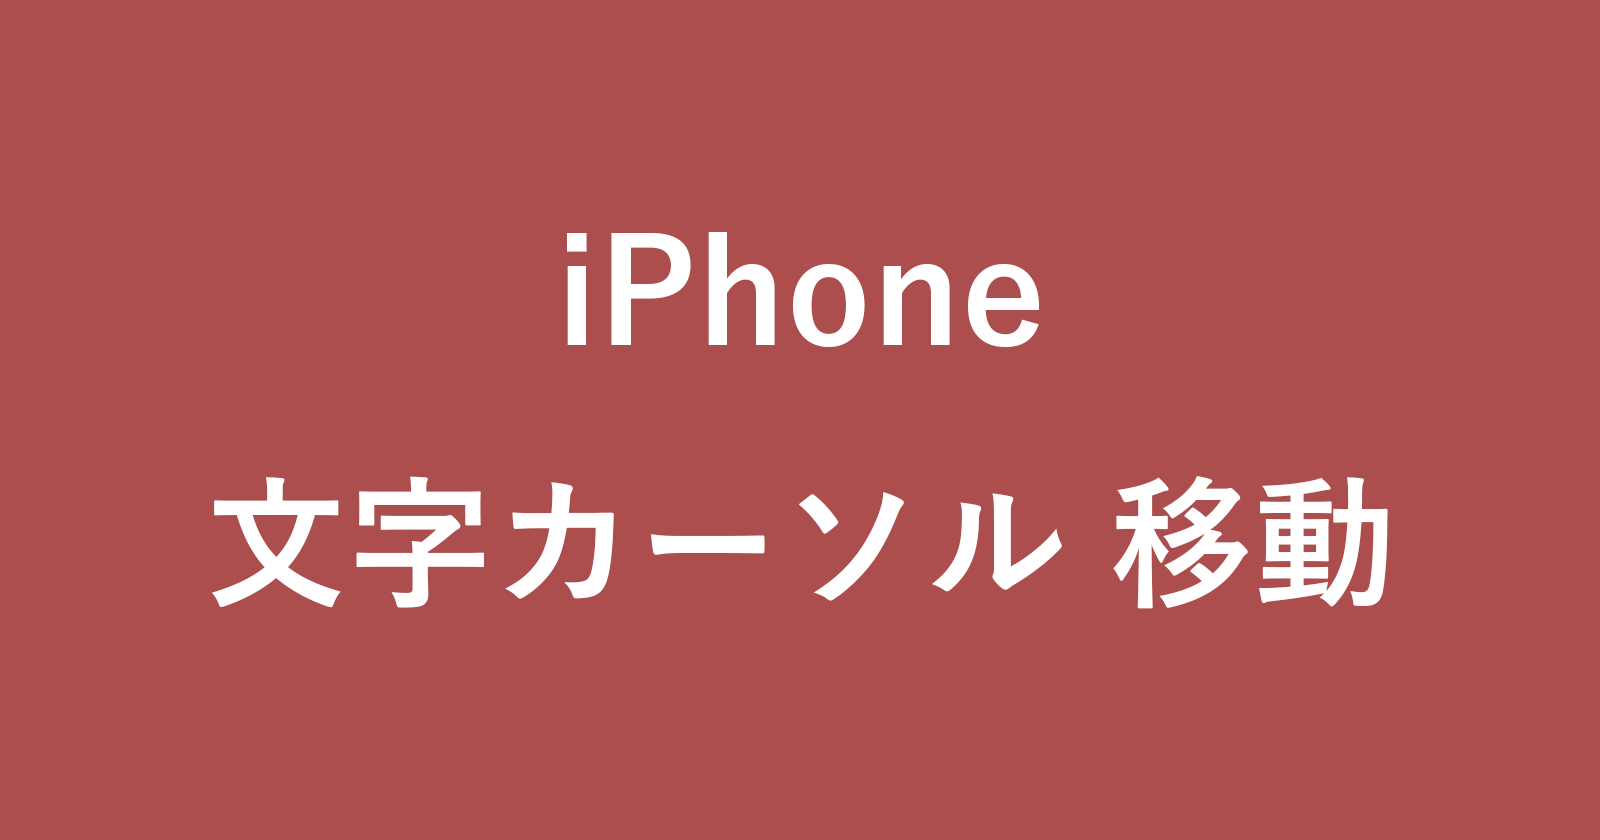 iphone text cursor